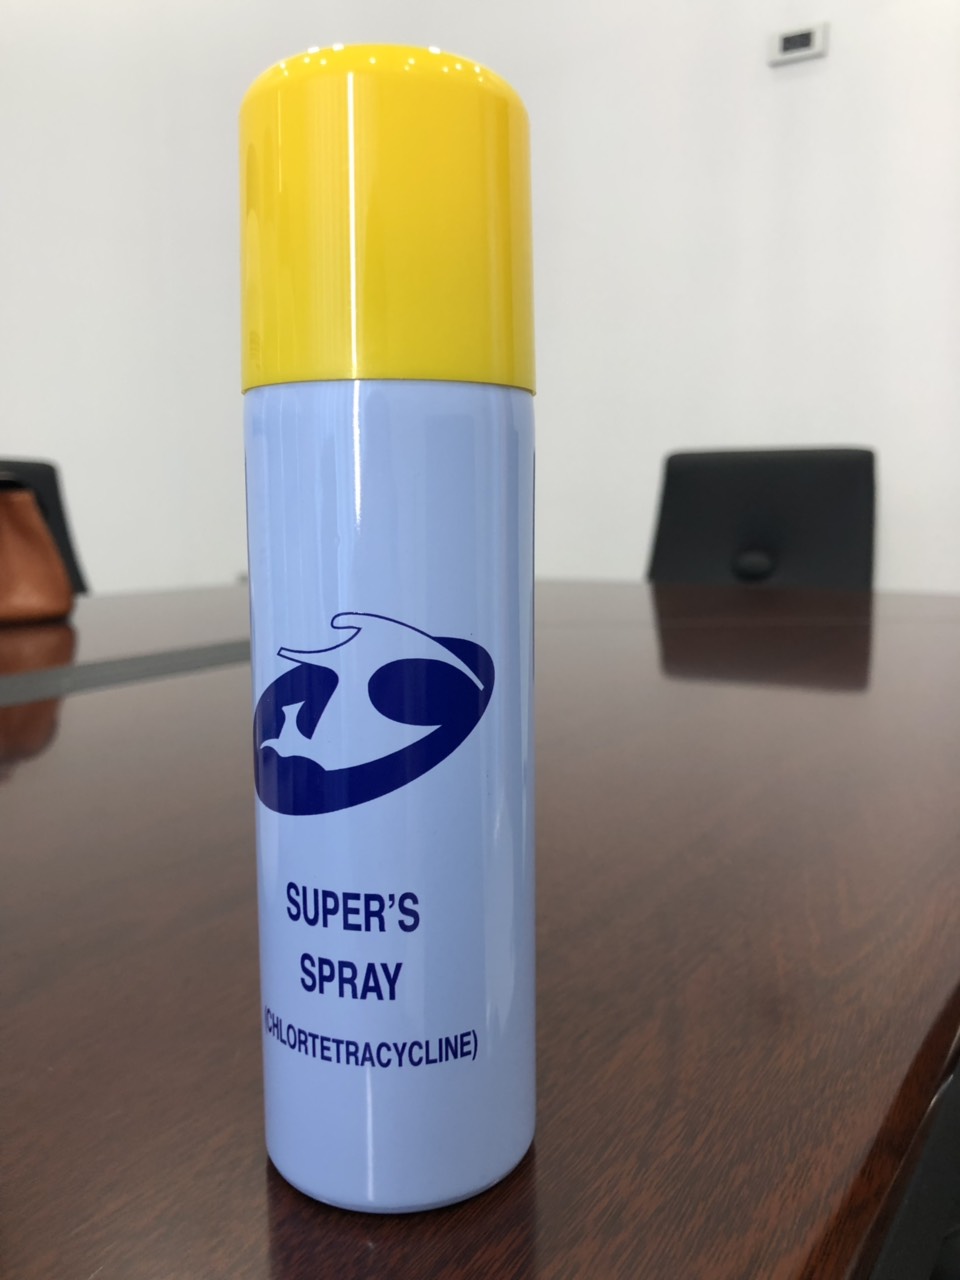 Super’s spray - chlortetracyline